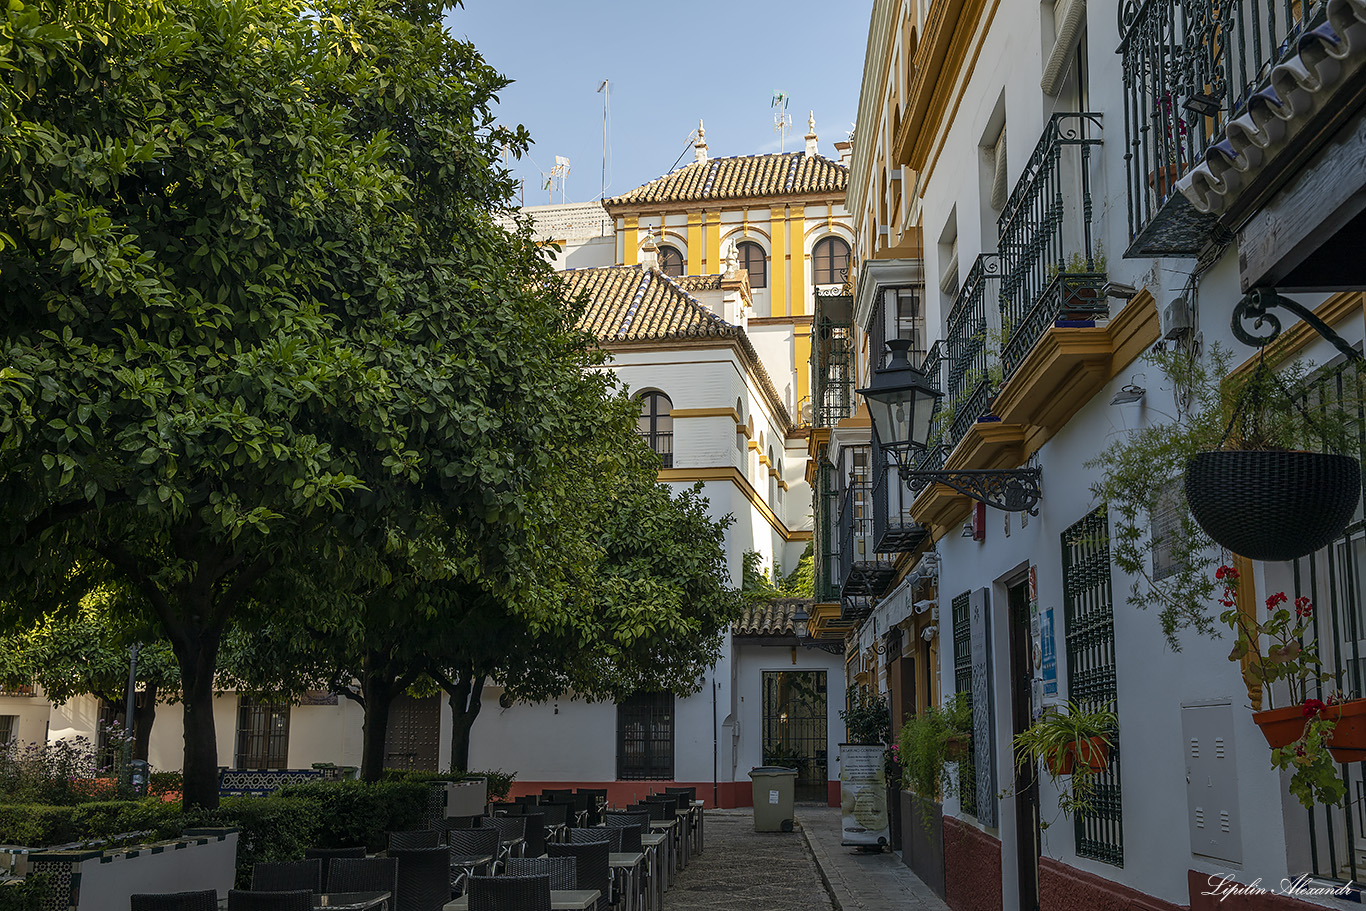 Севилья (Sevilla) - Испания (Spain)